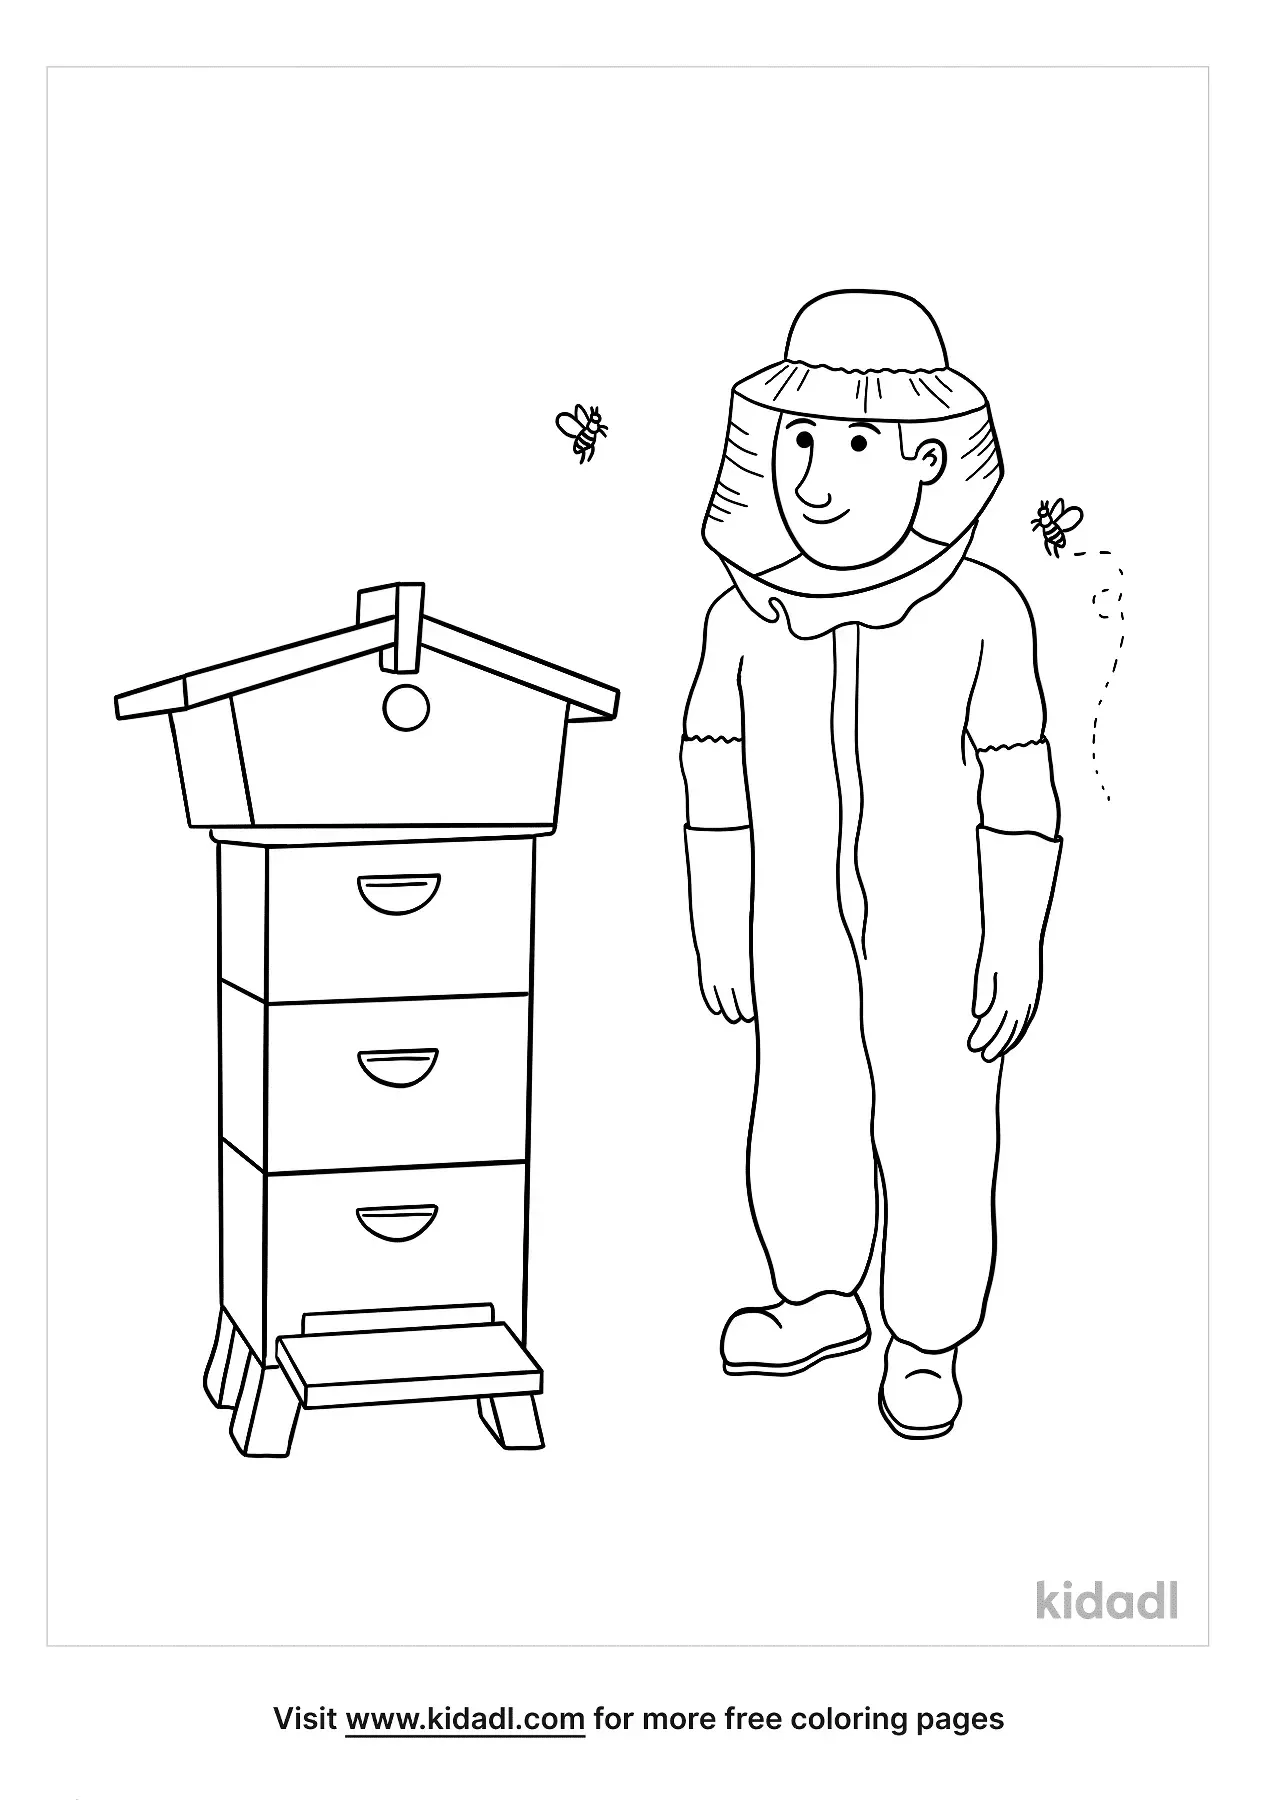 Free Beekeeper Coloring Page | Coloring Page Printables | Kidadl